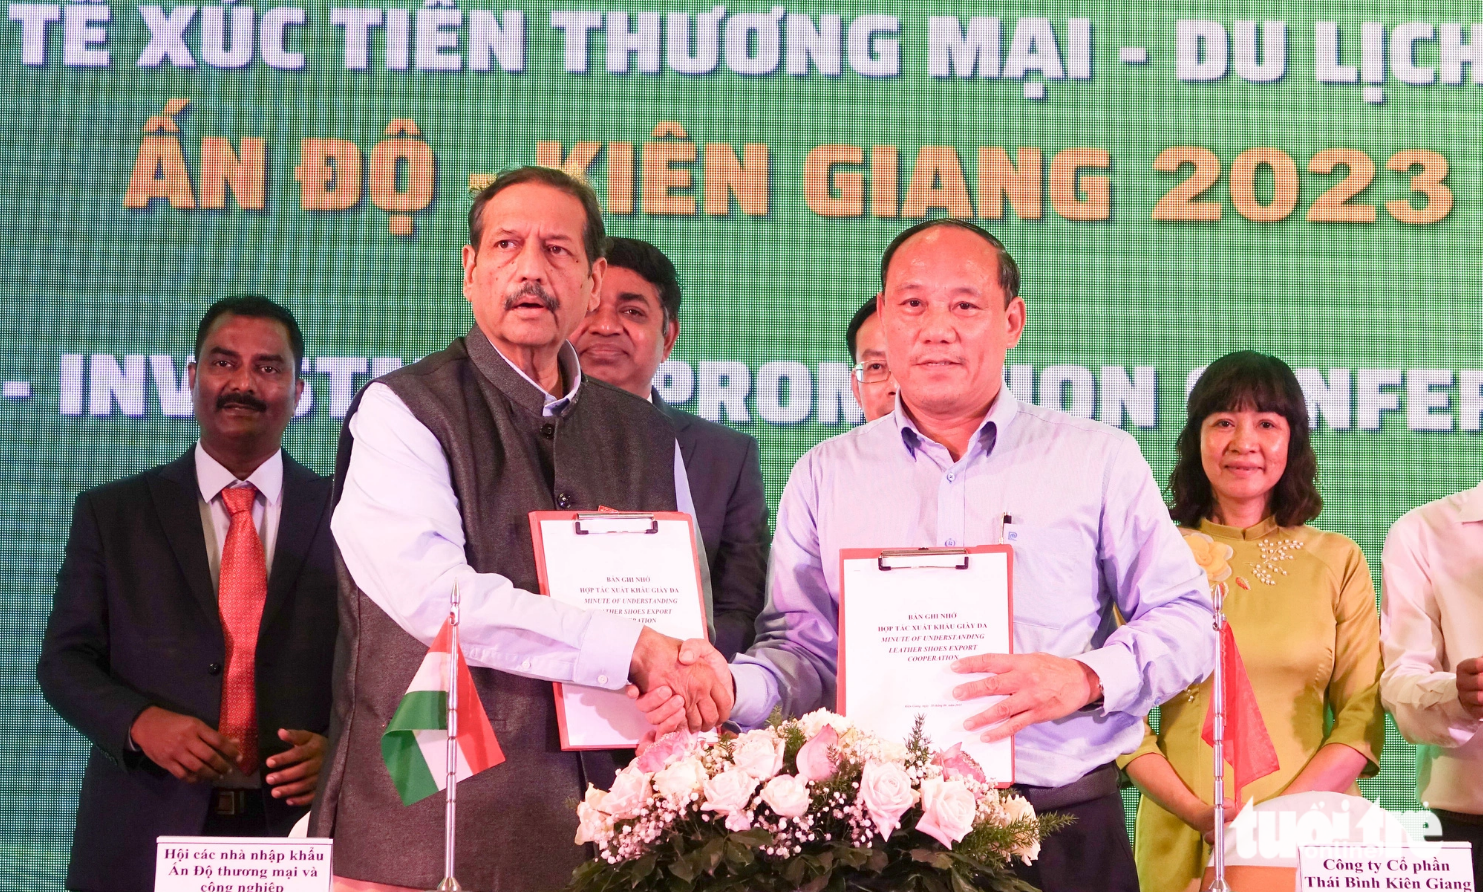 Over 100 Indian firms seek cooperation opportunities in Vietnam’s Mekong Delta